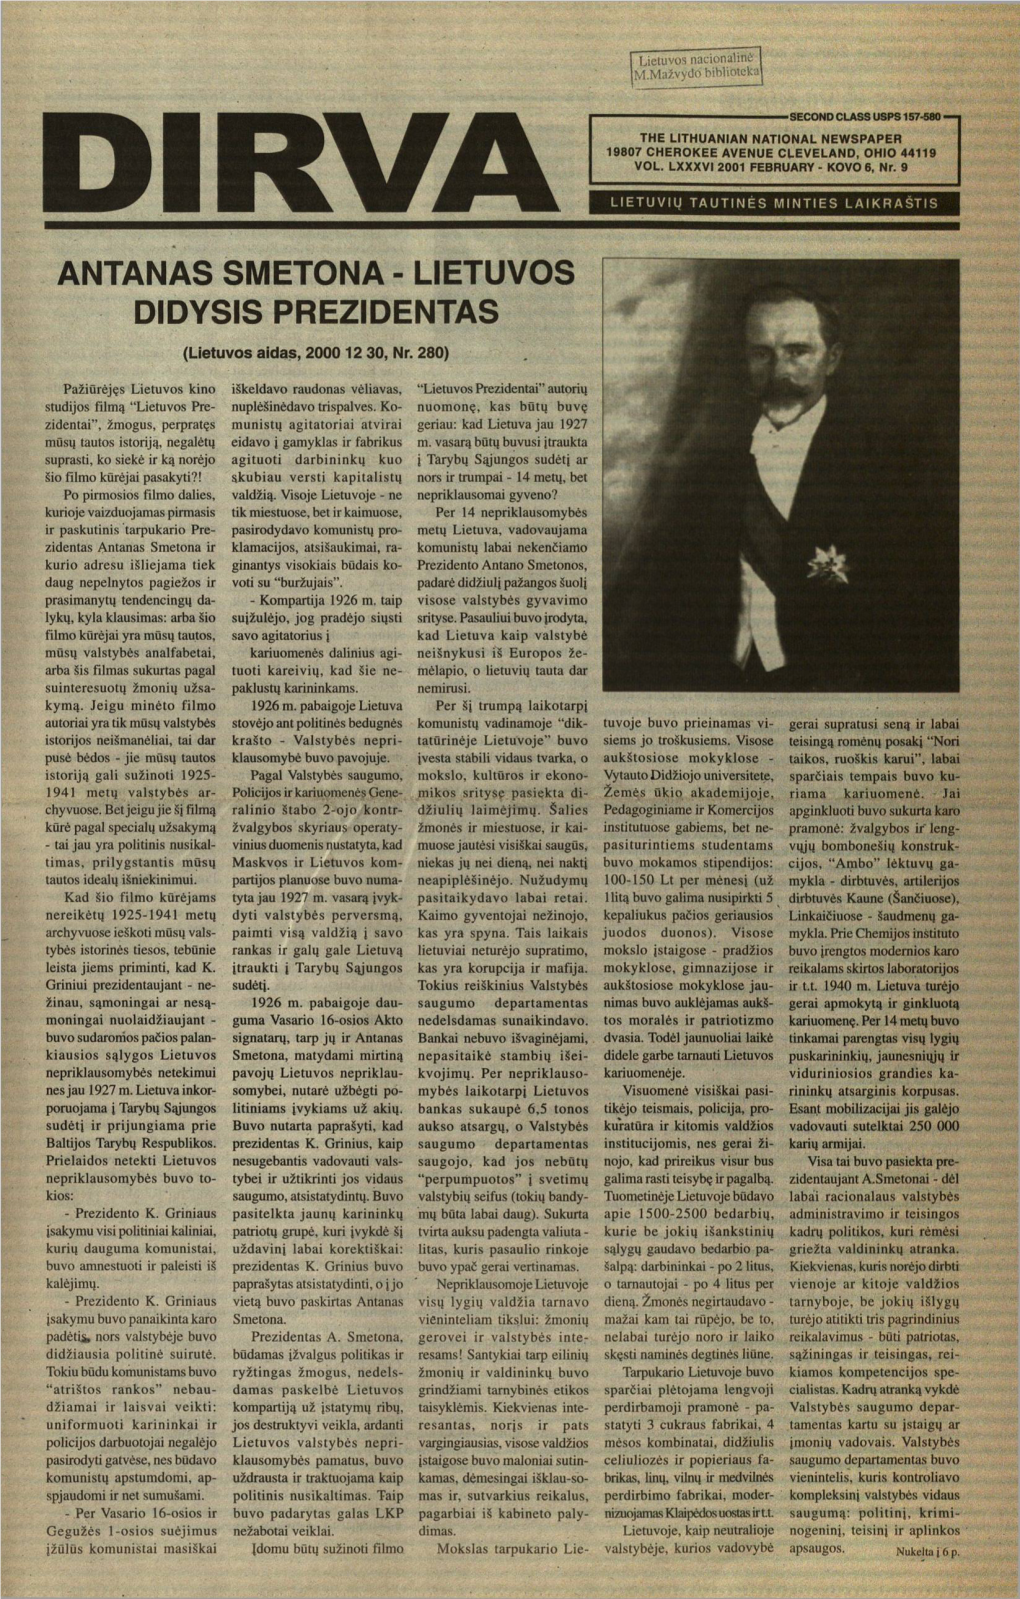 ANTANAS SMETONA - LIETUVOS DIDYSIS PREZIDENTAS (Lietuvos Aidas, 2000 12 30, Nr